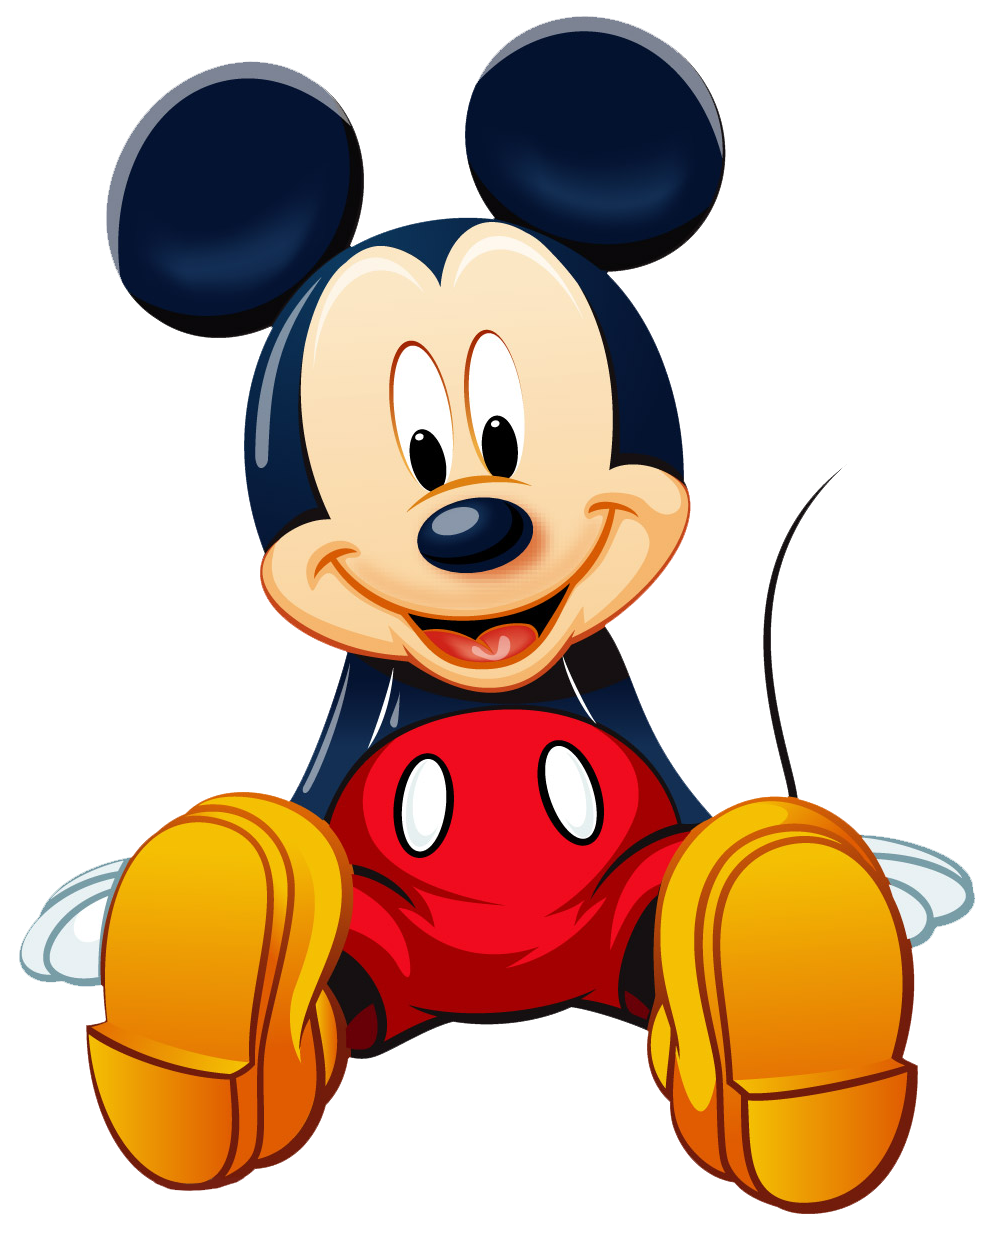 Chuột Mickey đang ngồi